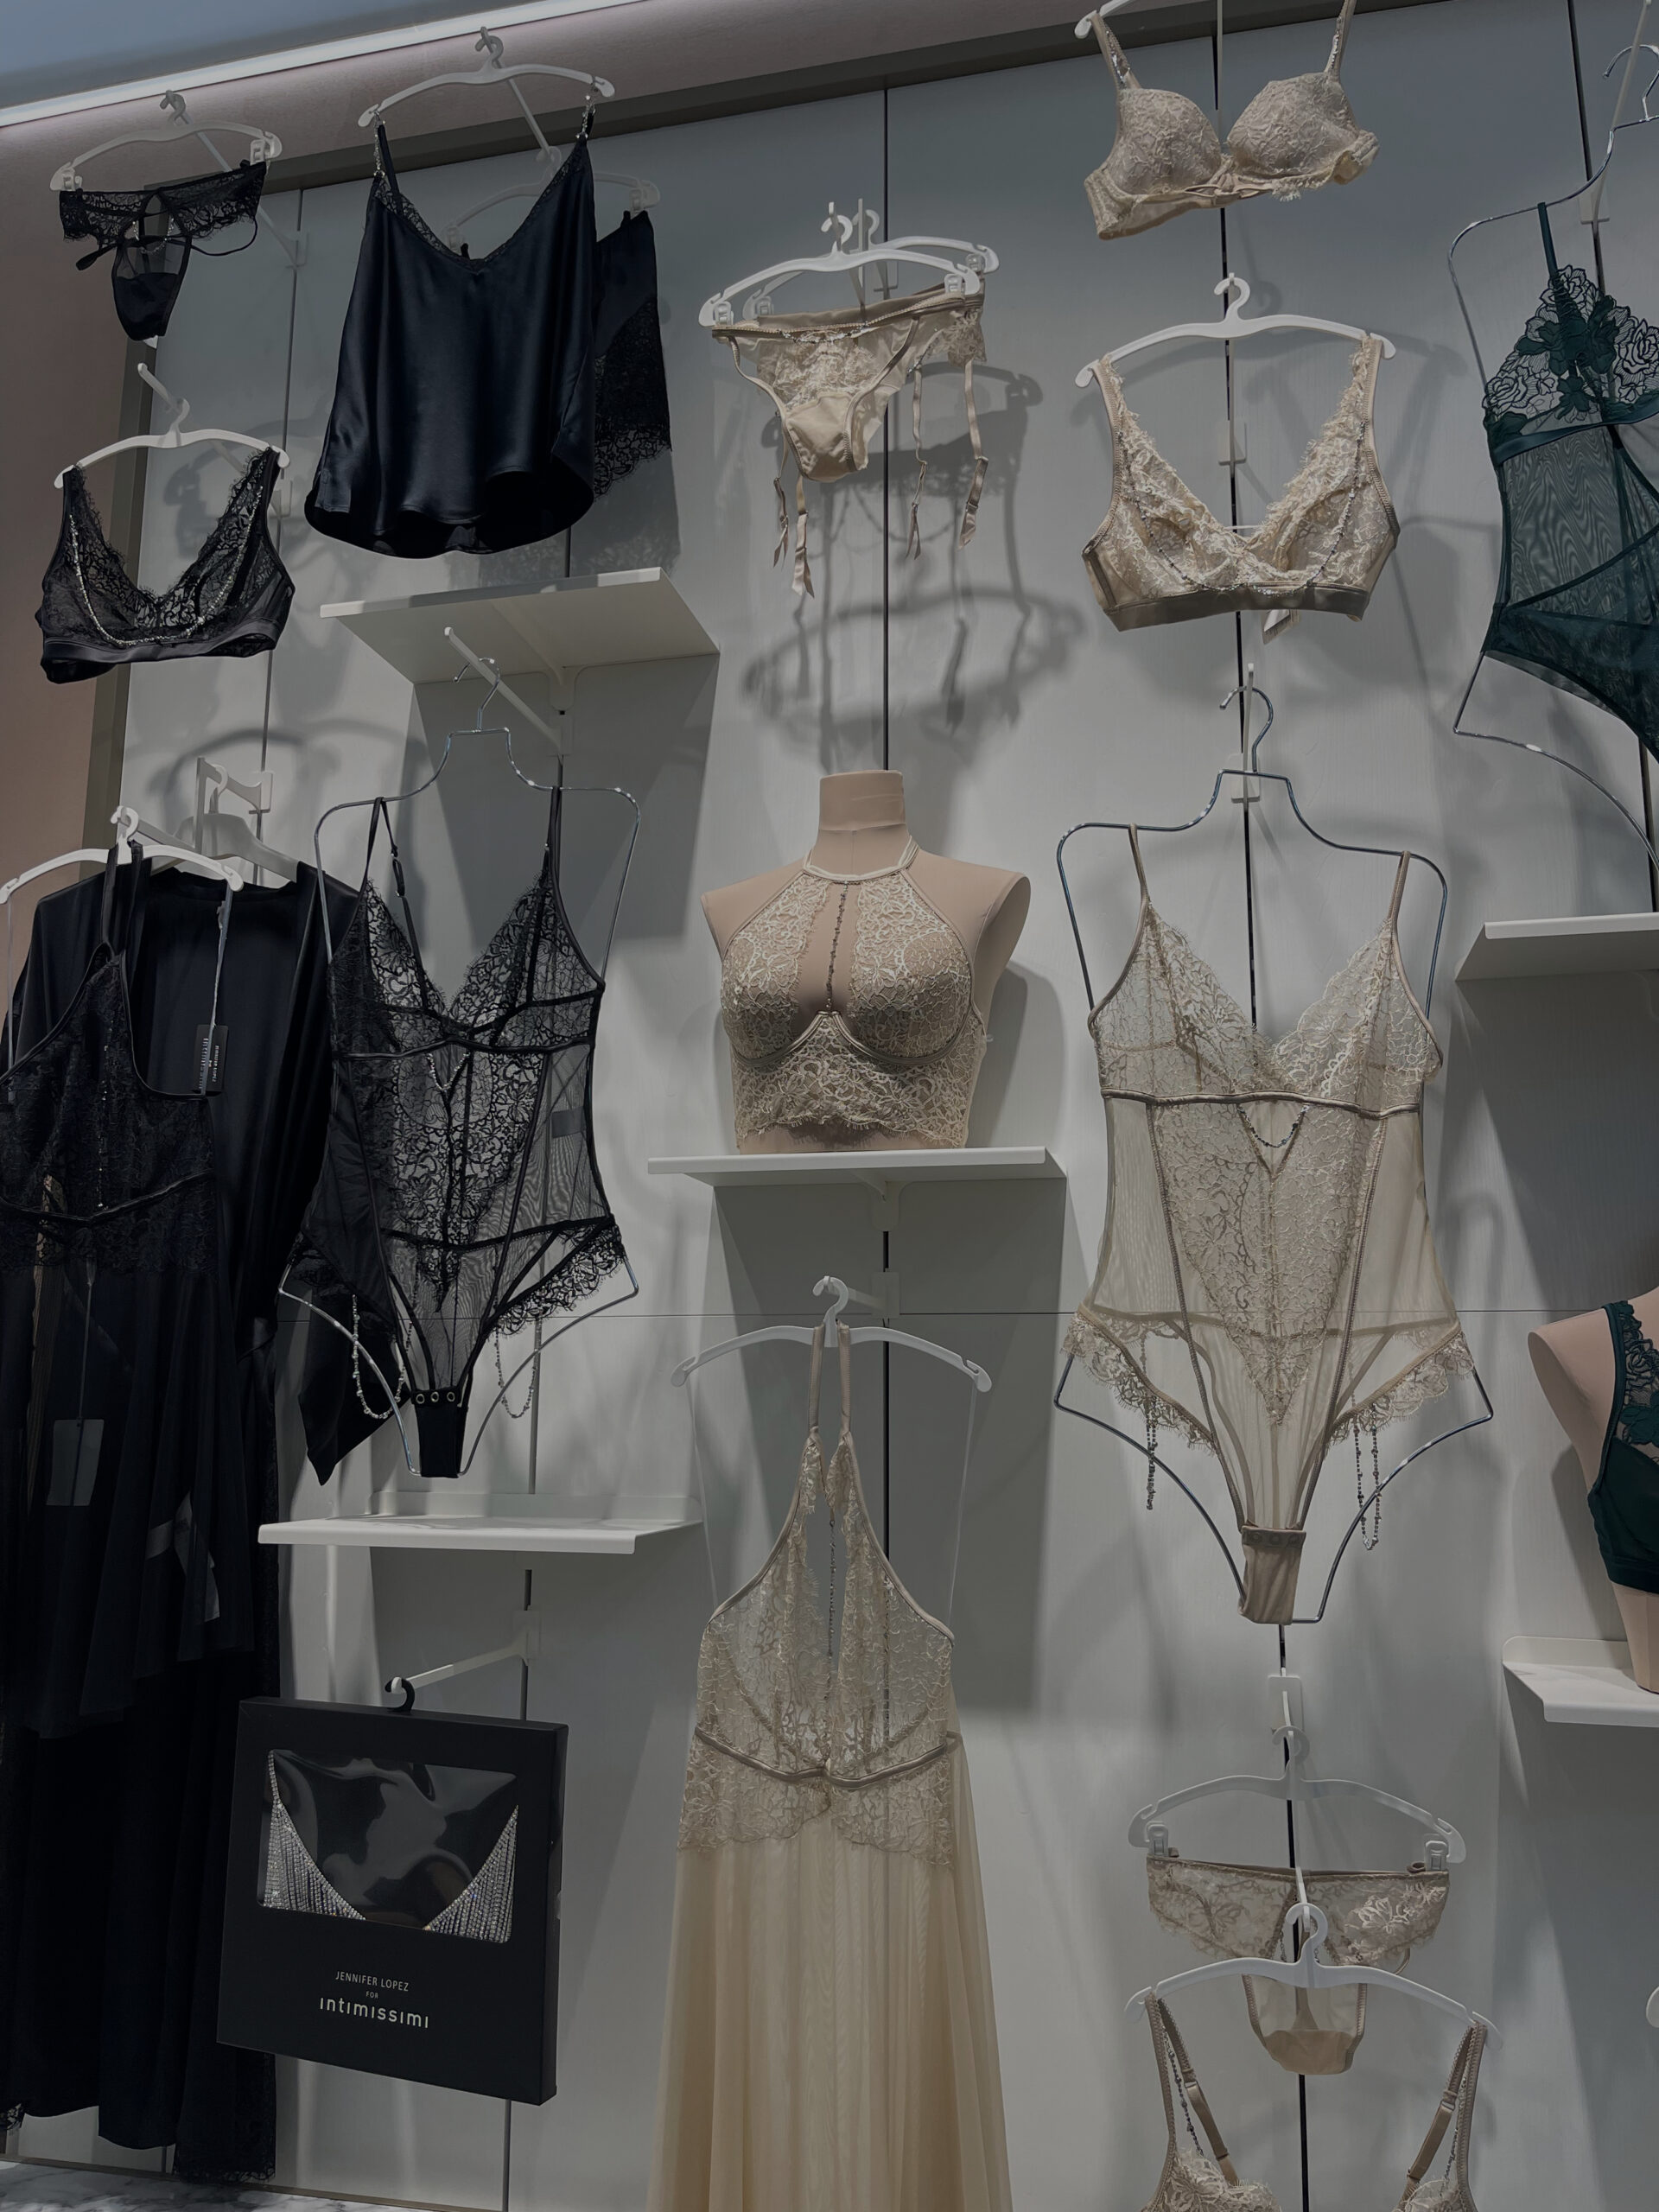 La La Laundry & Maids on Instagram: It's National Underwear Day